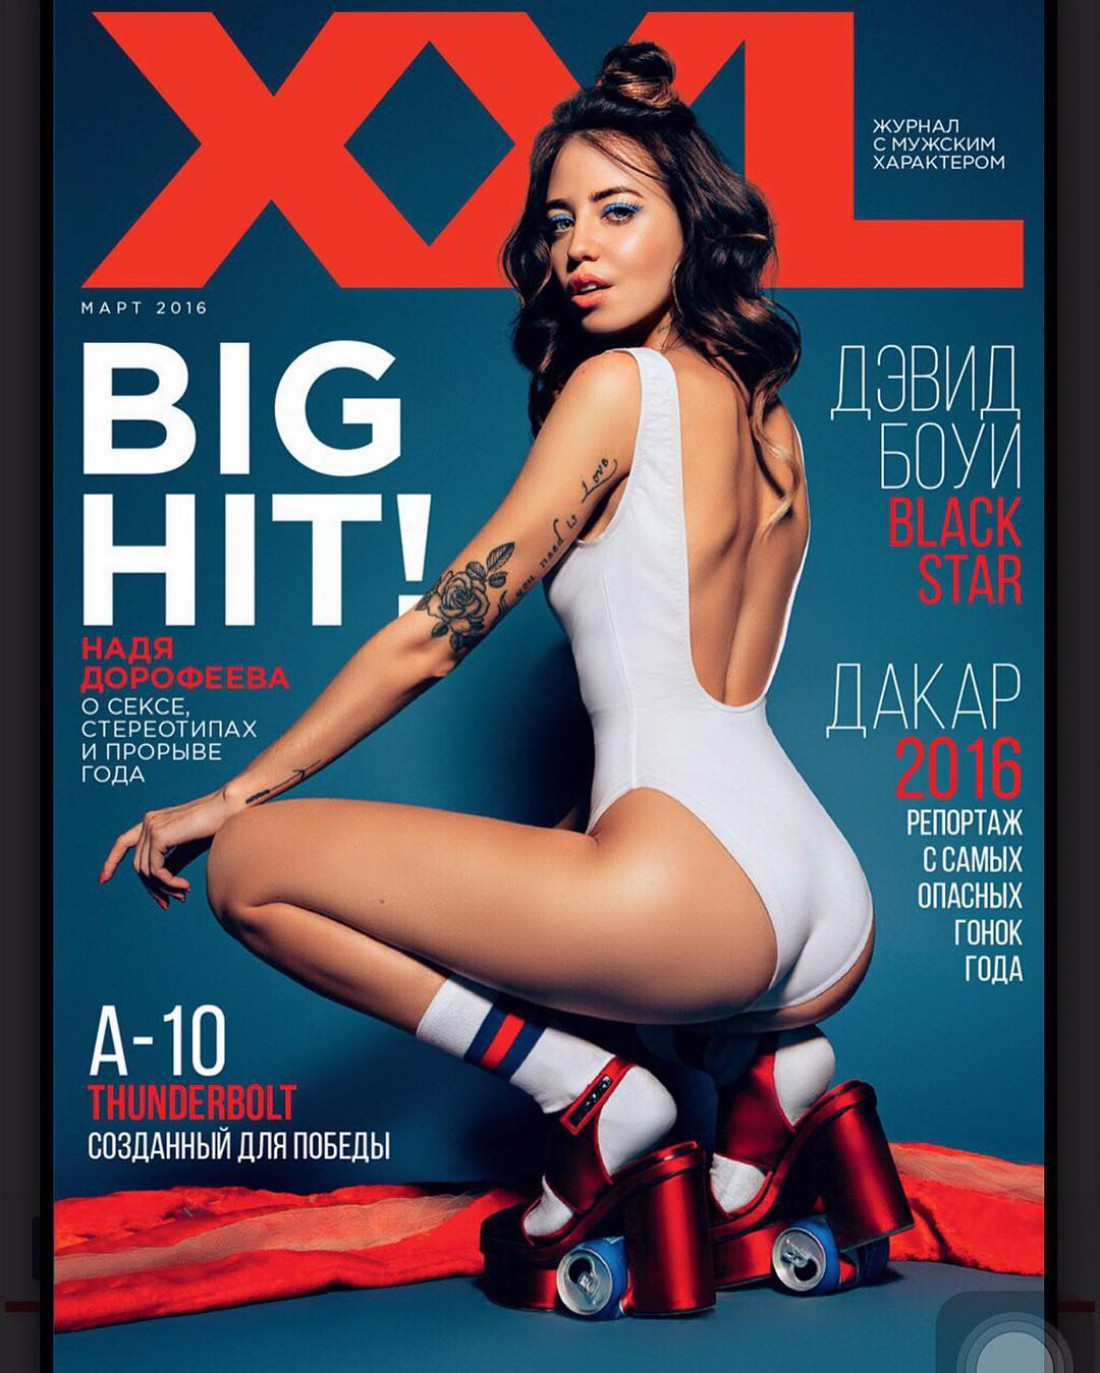 Надя Дорофеева появилась на обложке мужского журнала